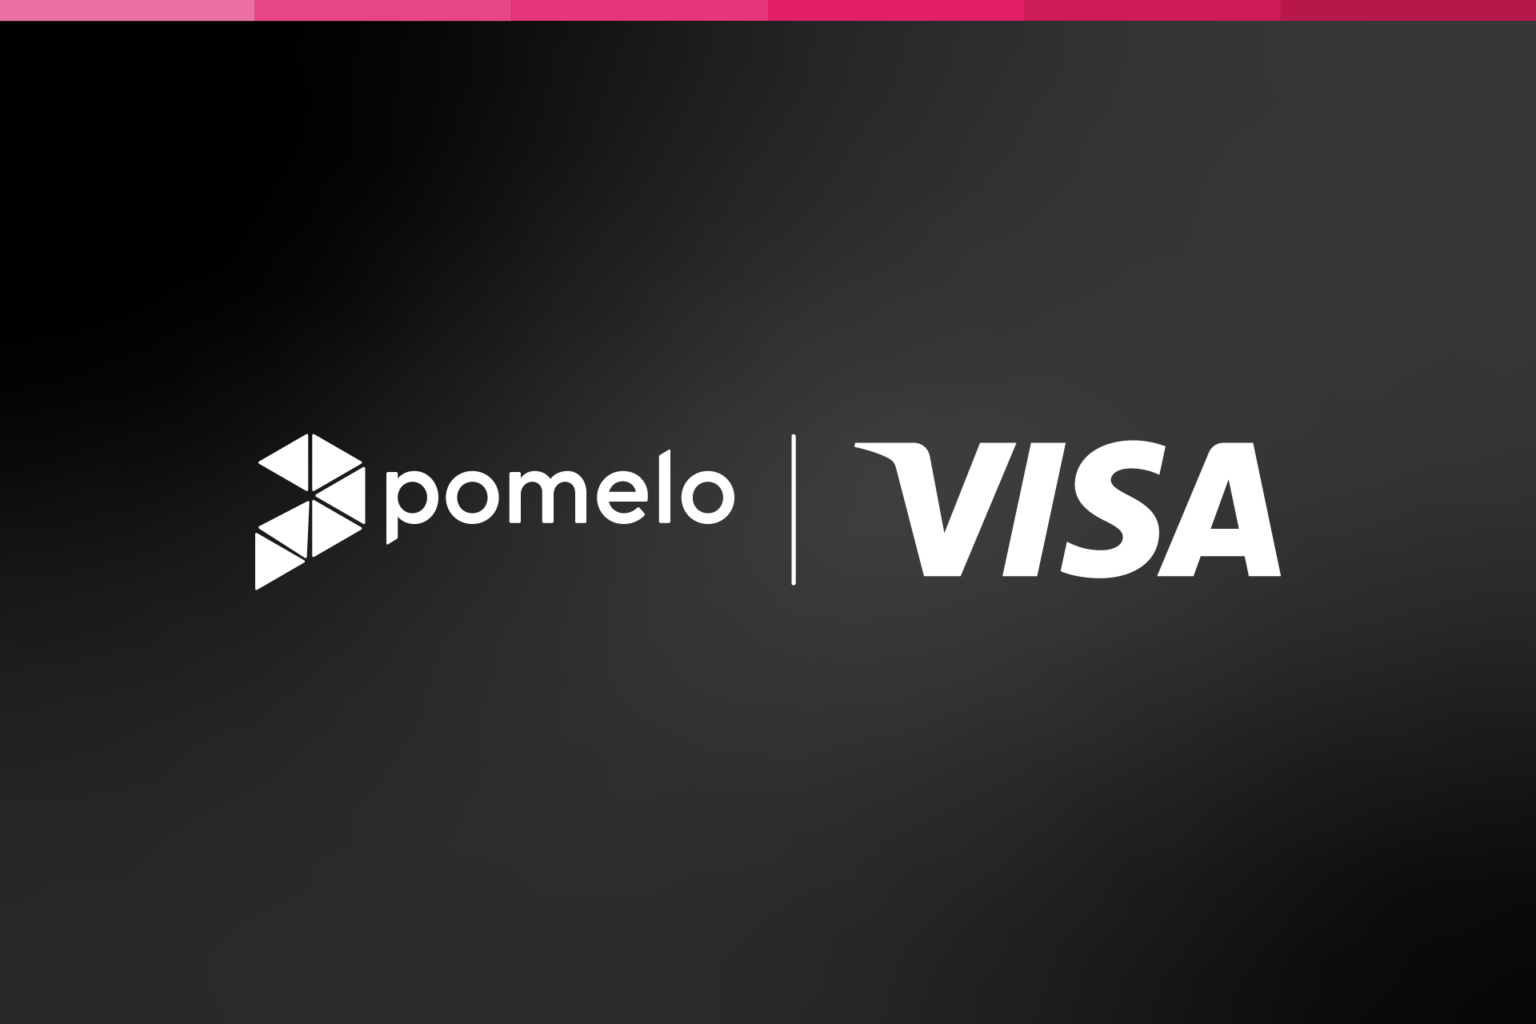 Pomelo + Visa